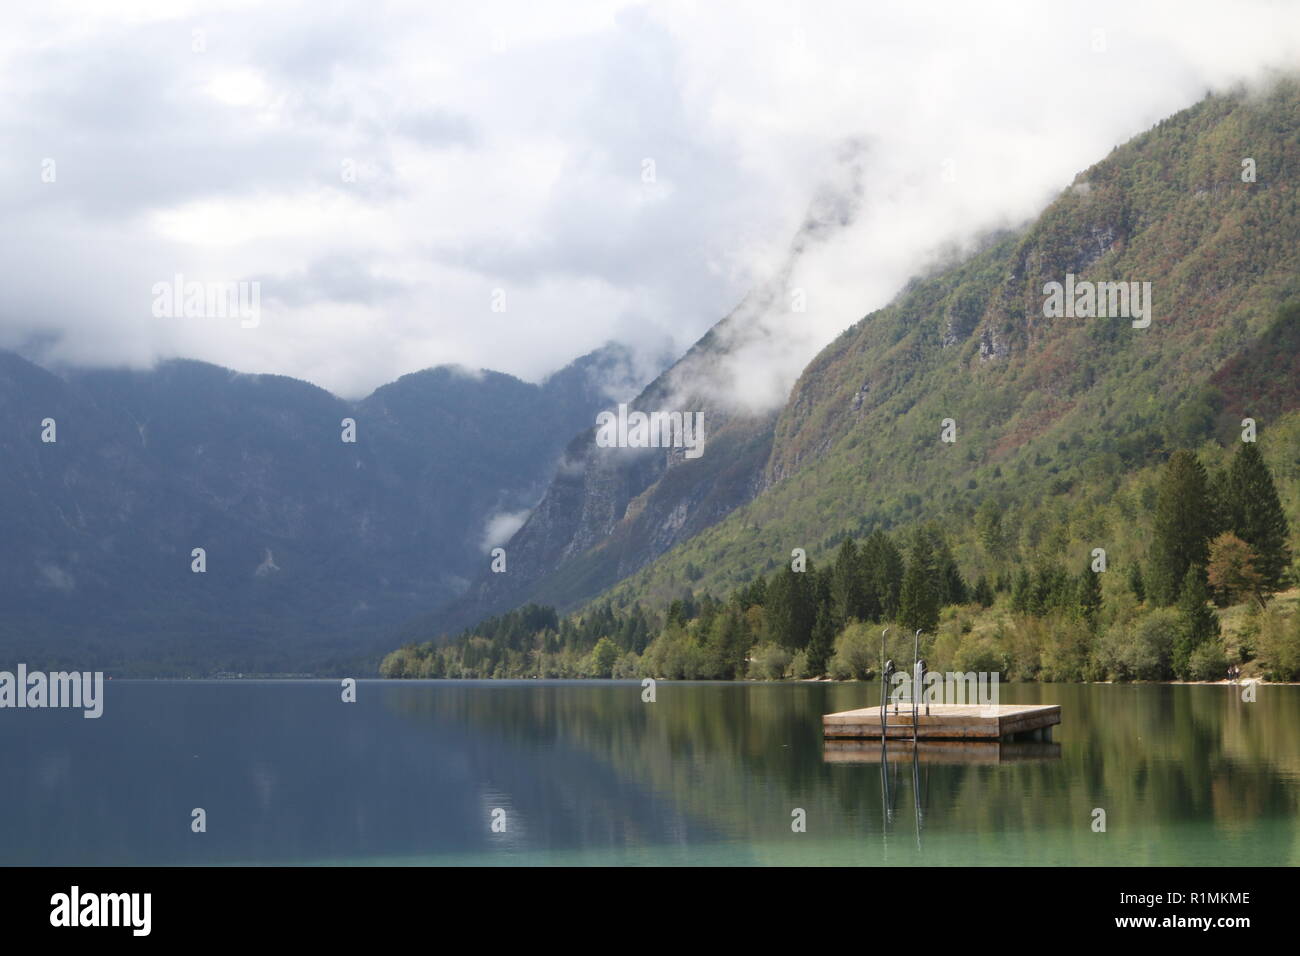 Plate-forme de baignade dans le magnifique paysage de la nature, le lac Bohinjsko jezero, Bohinj, Slovénie Banque D'Images